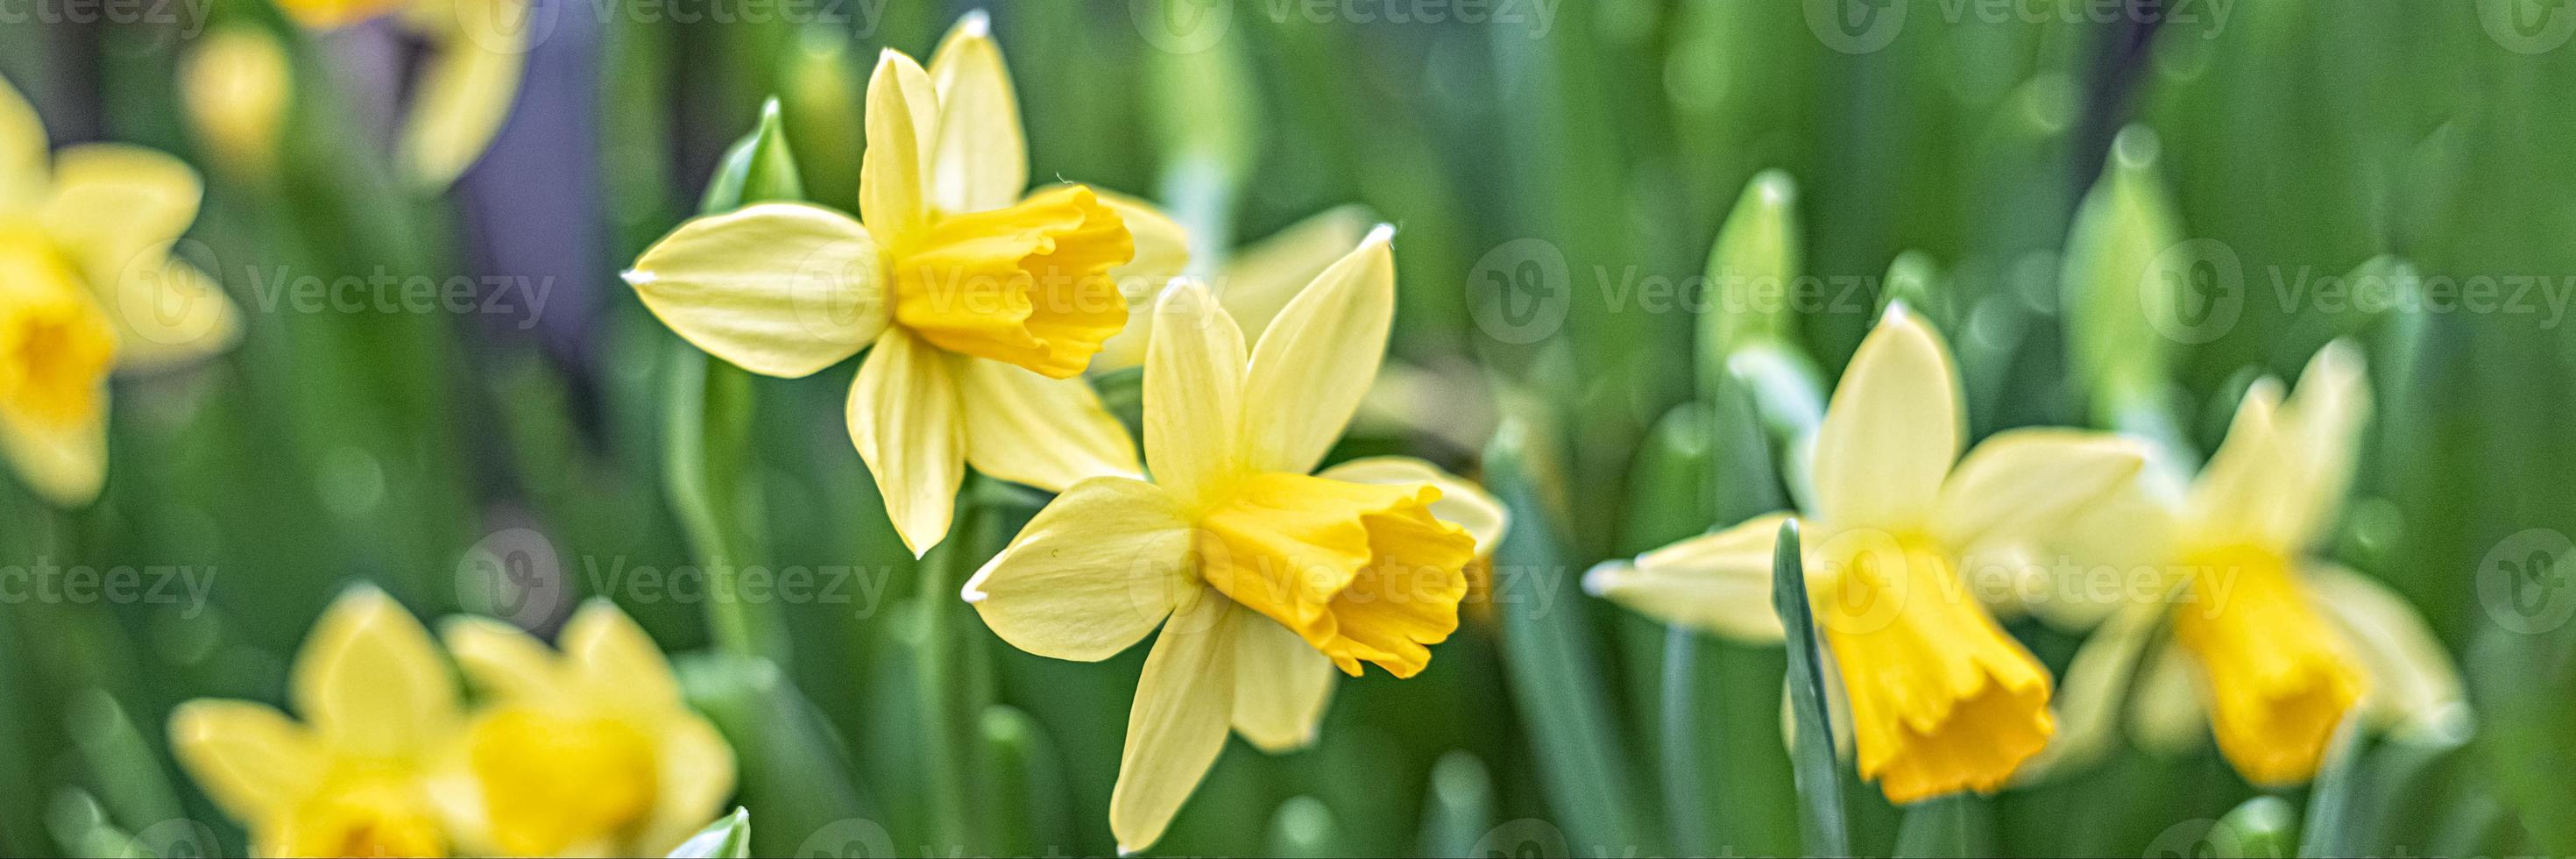 achtergrond van gele narcissen in de tuin. voorjaar. bloeiende bloemen. banier foto